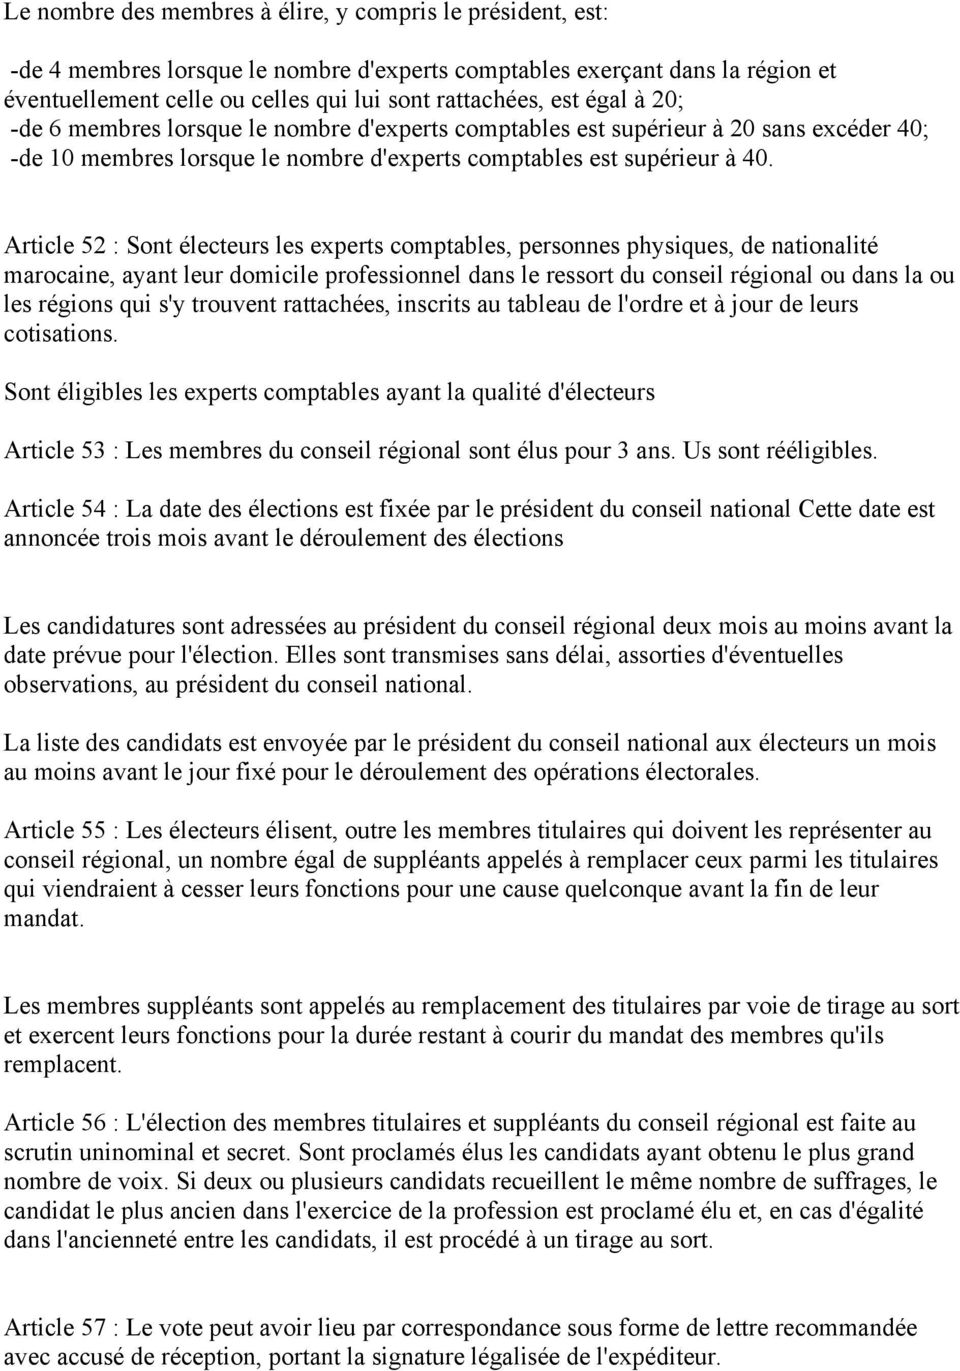 Article 52 : Sont électeurs les experts comptables, personnes physiques, de nationalité marocaine, ayant leur domicile professionnel dans le ressort du conseil régional ou dans la ou les régions qui